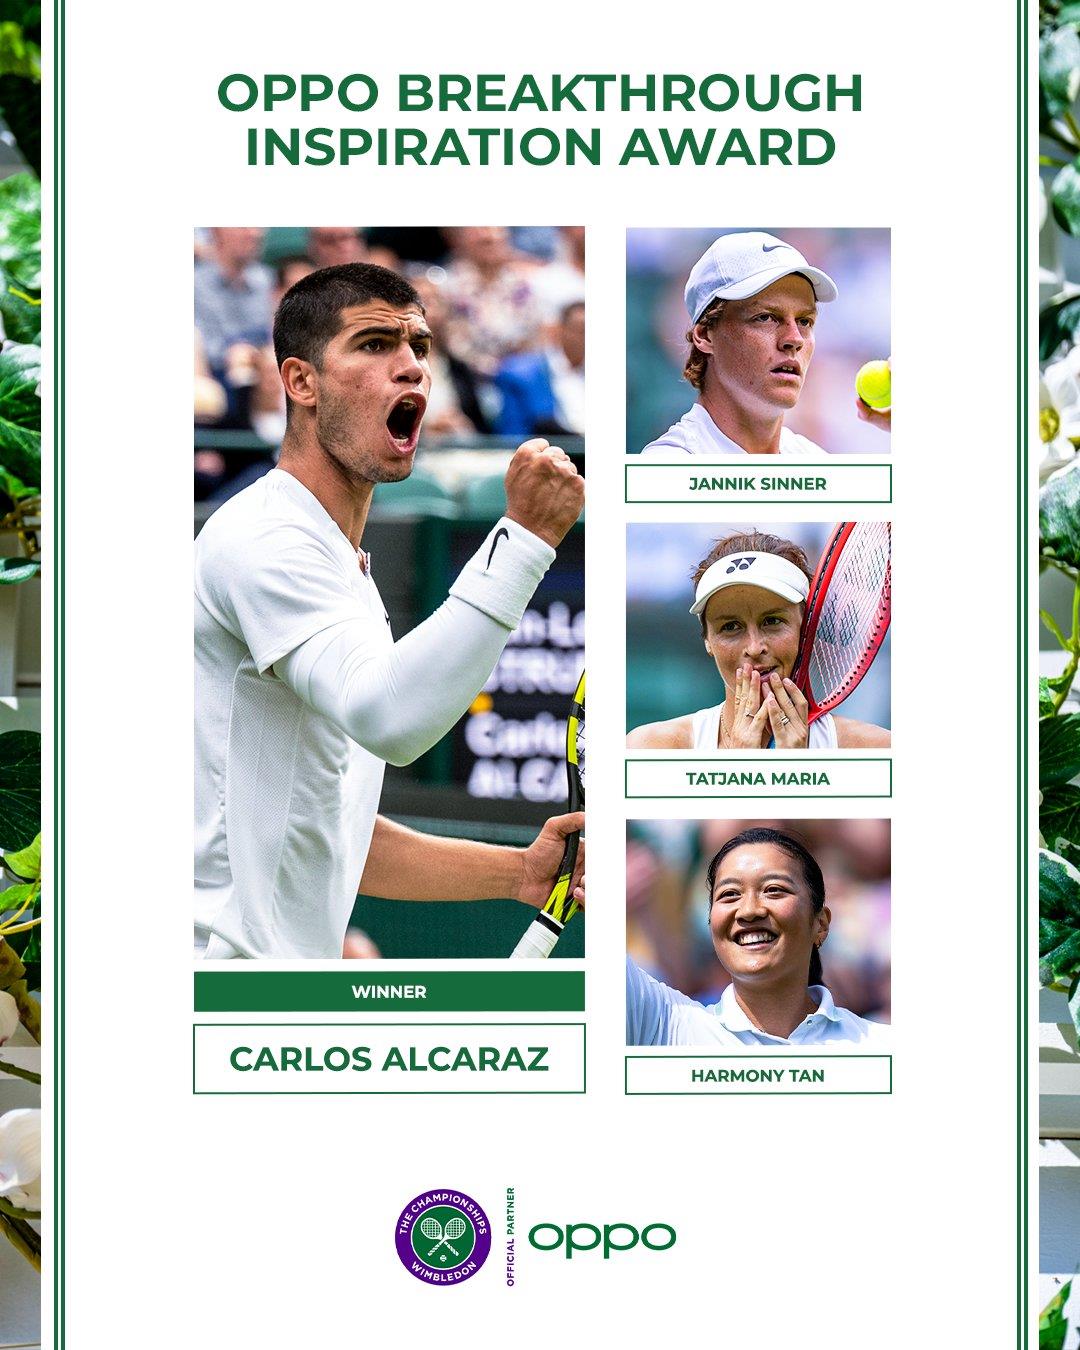 Congratulations To Carlos Alcaraz, Who Wins The OPPO Breakthrough Inspiration Award At Wimbledon 2022